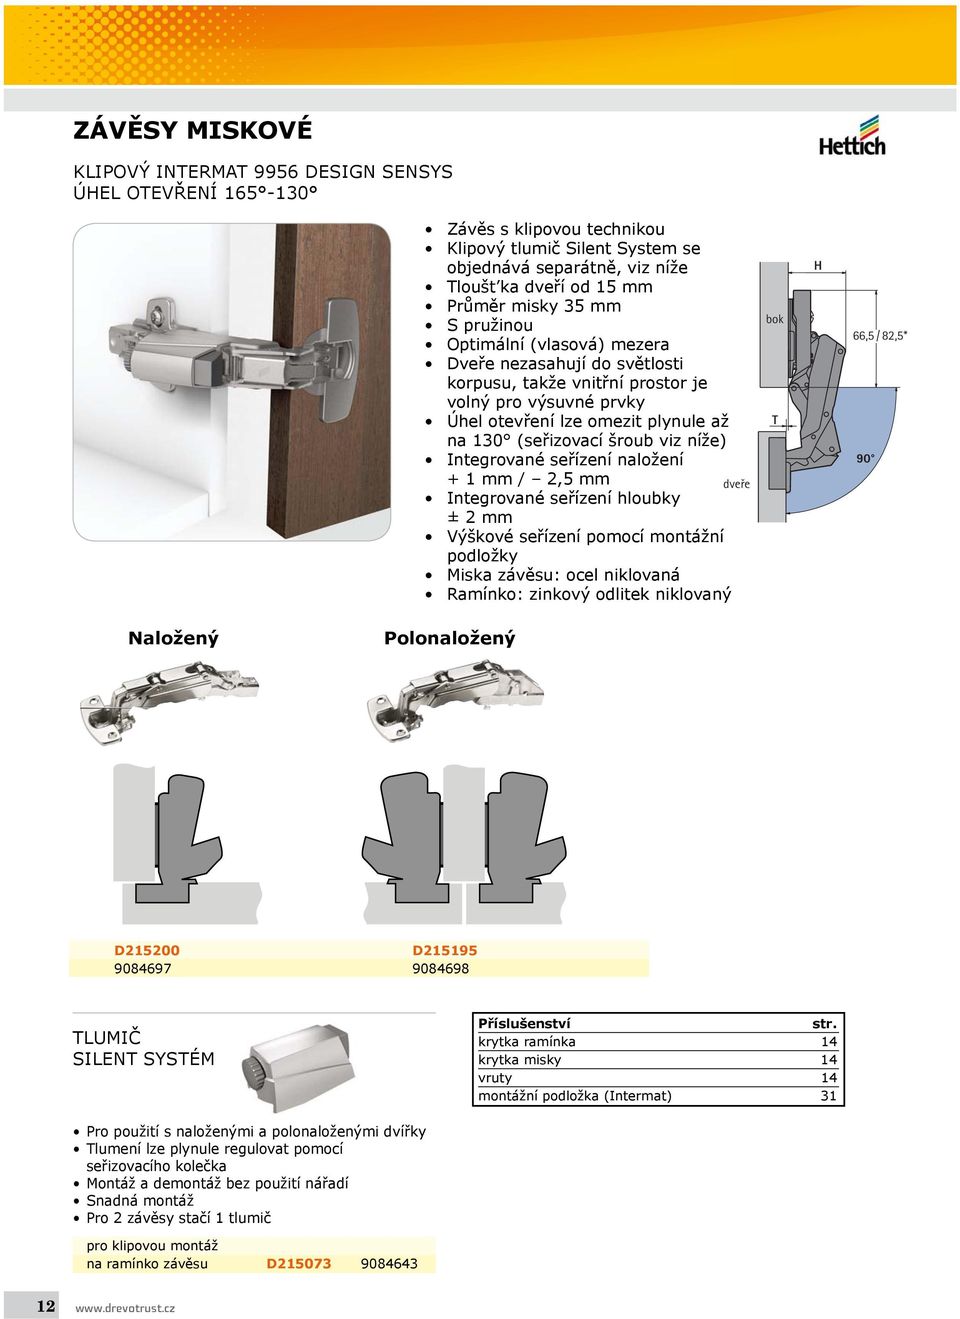 níže) Integrované seřízení naložení + 1 mm / 2,5 mm Integrované seřízení hloubky ± 2 mm Výškové seřízení pomocí montážní podložky Miska závěsu: ocel niklovaná Ramínko: zinkový odlitek niklovaný dveře